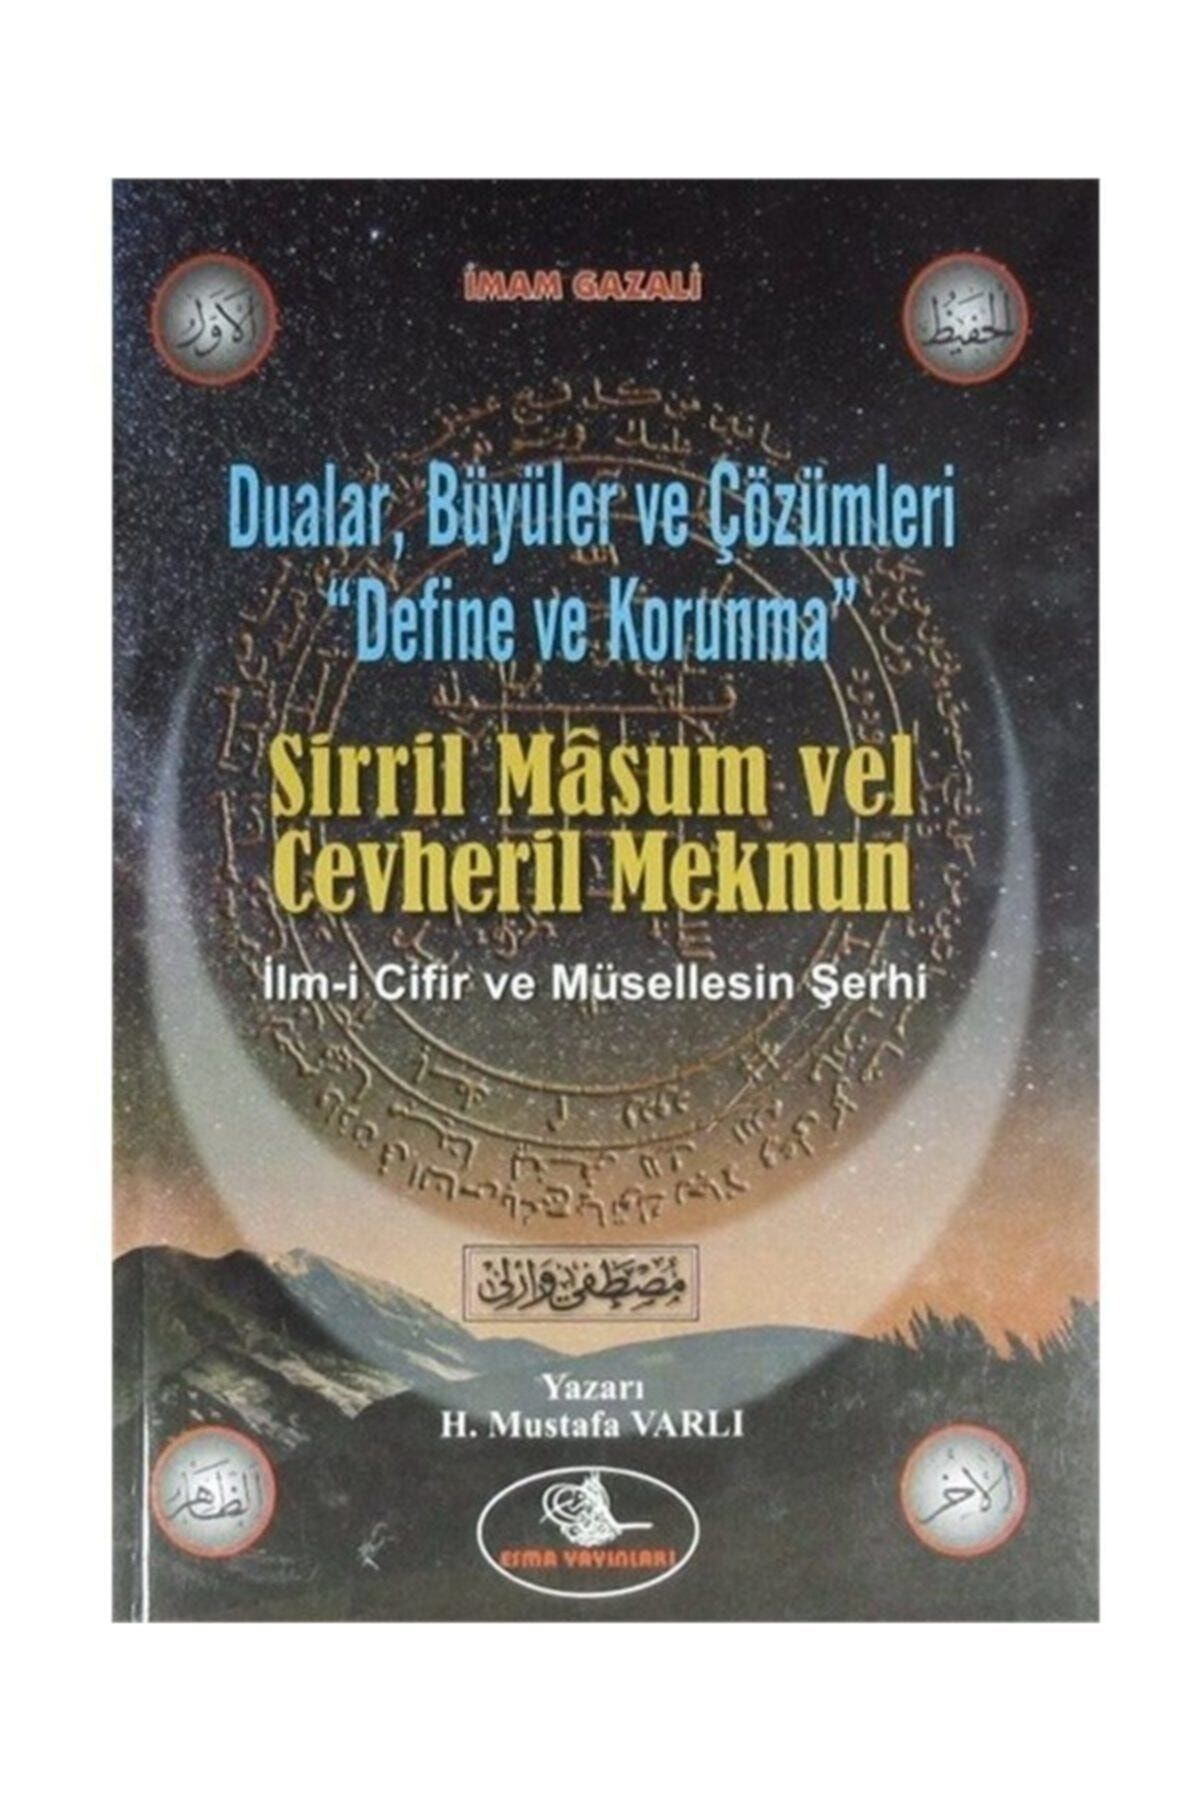 Esma Yayınları Dualar, Büyüler Ve Çözümleri - Define Ve Korunma & Sirril Masum Vel Cevheril Meknun